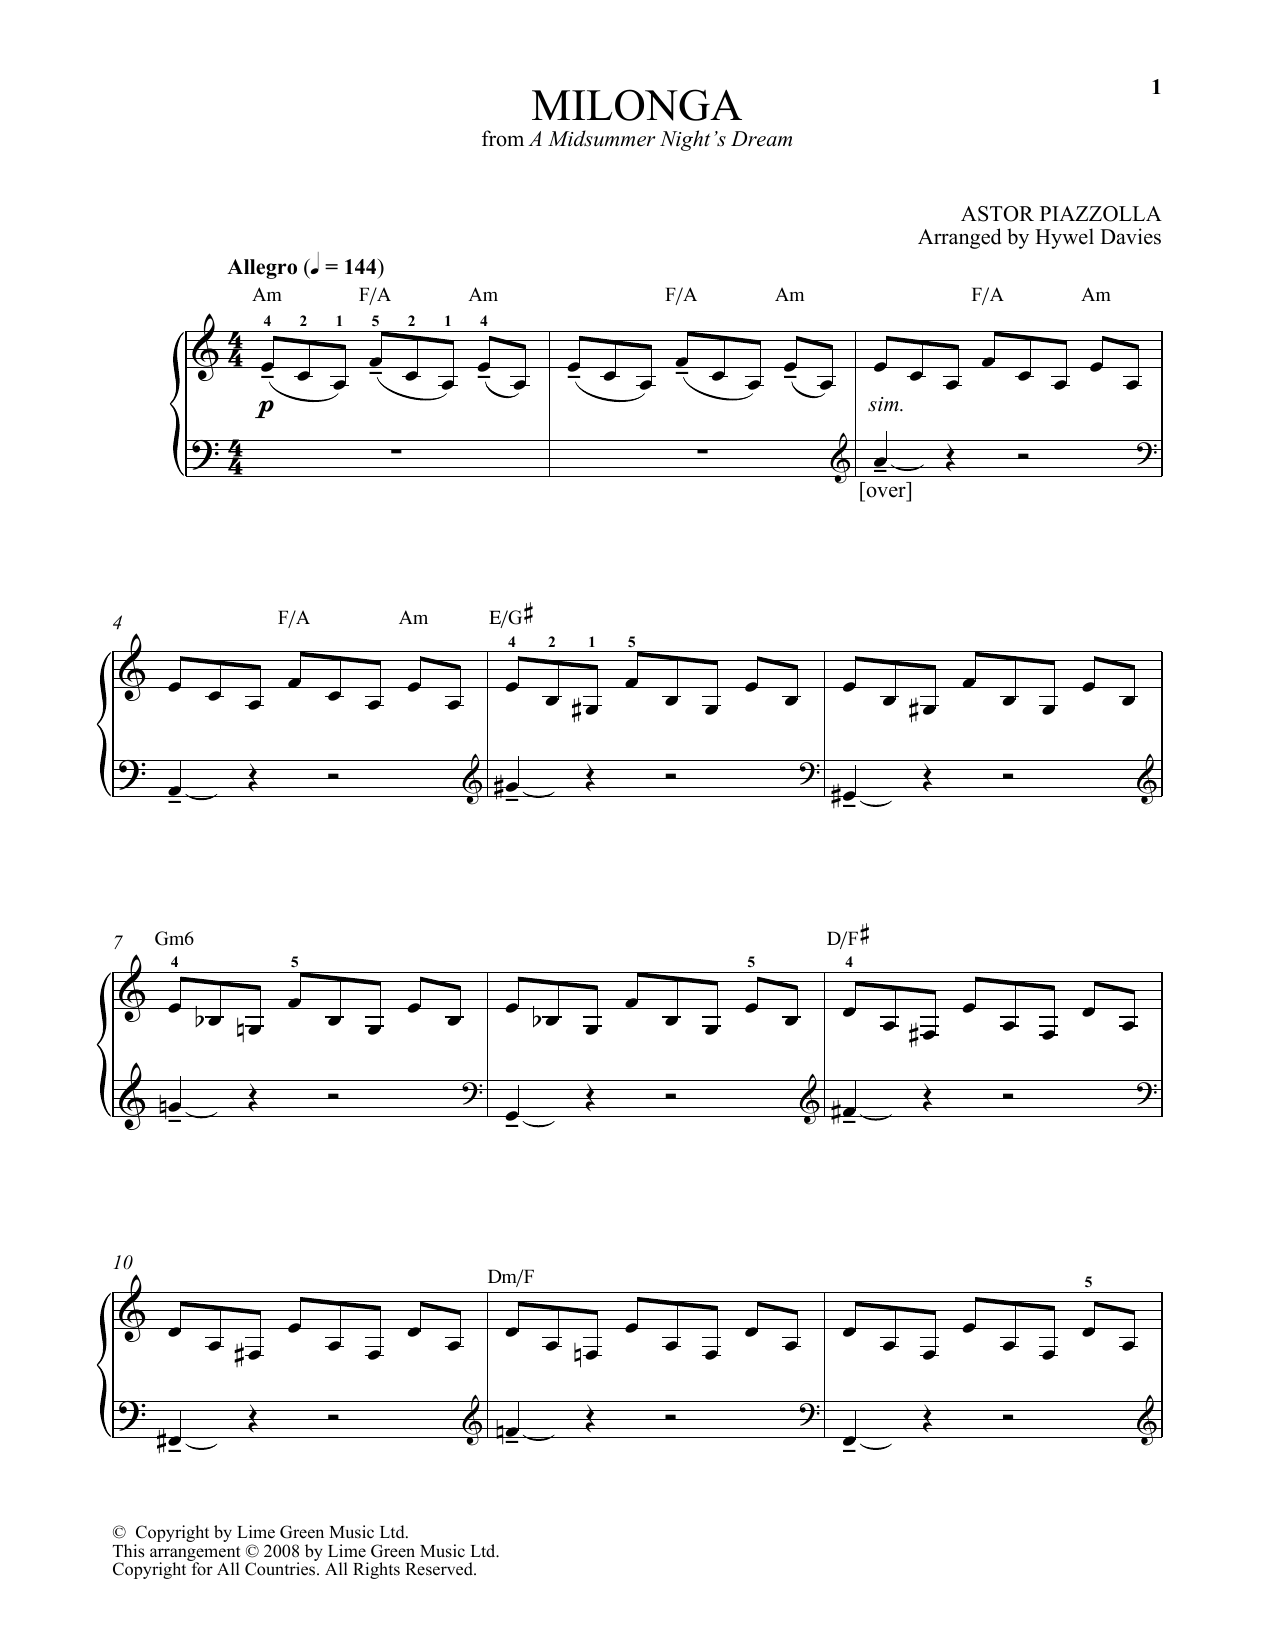 Download Astor Piazzolla Milonga Sheet Music